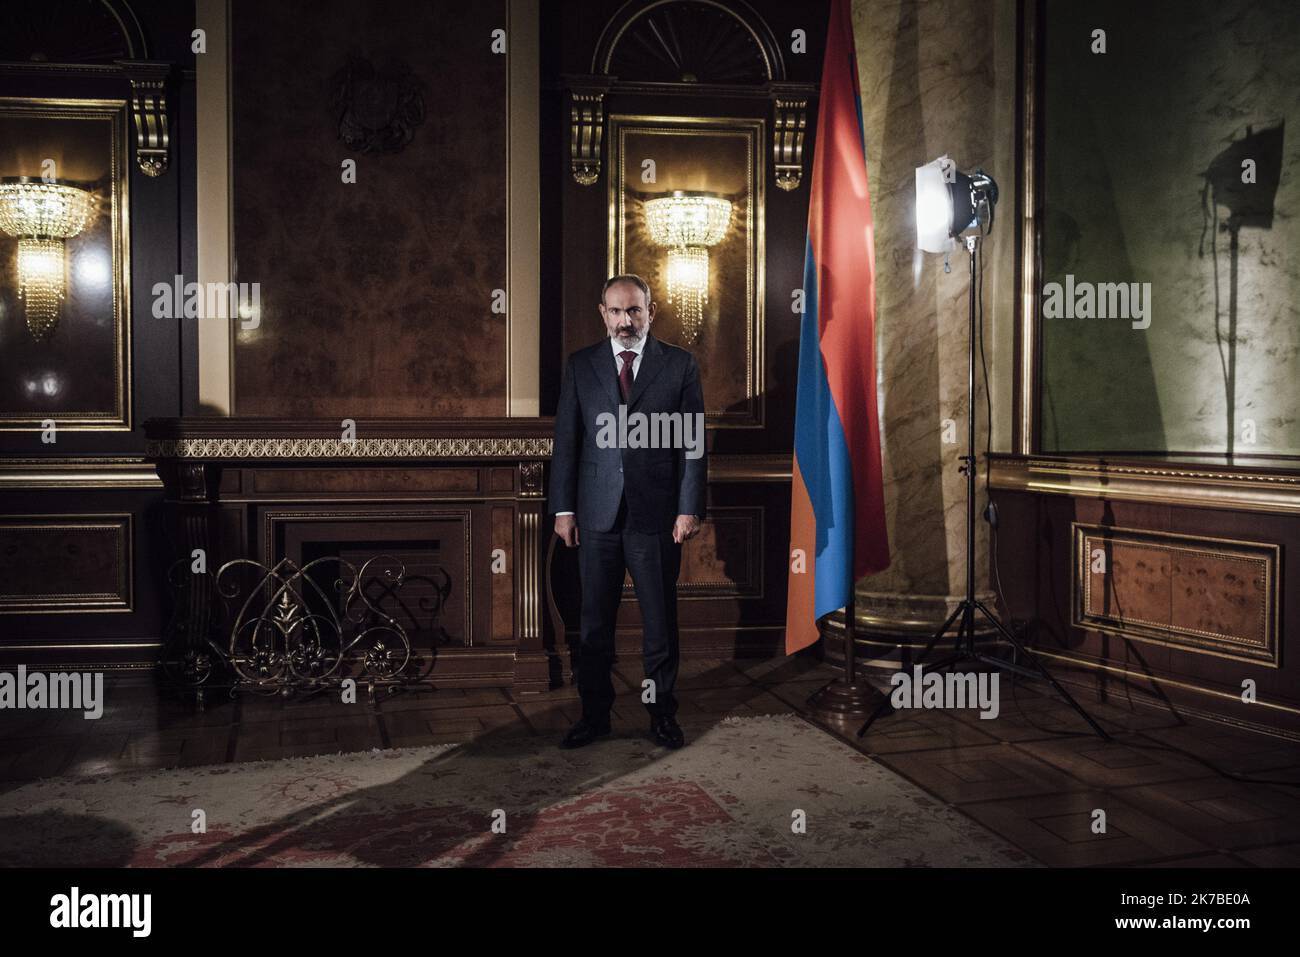 ©Adrien Vautier / Le Pictorium/MAXPPP - Adrien Vautier / Le Pictorium - 15/10/2020 - armenie - Nikol Pashinyan, 1er ministre et chef de l'Etat armenien. / 15/10/2020 - Armenia - Nikol Pashinyan, Prime Minister and Head of State of Armenia. Stock Photo